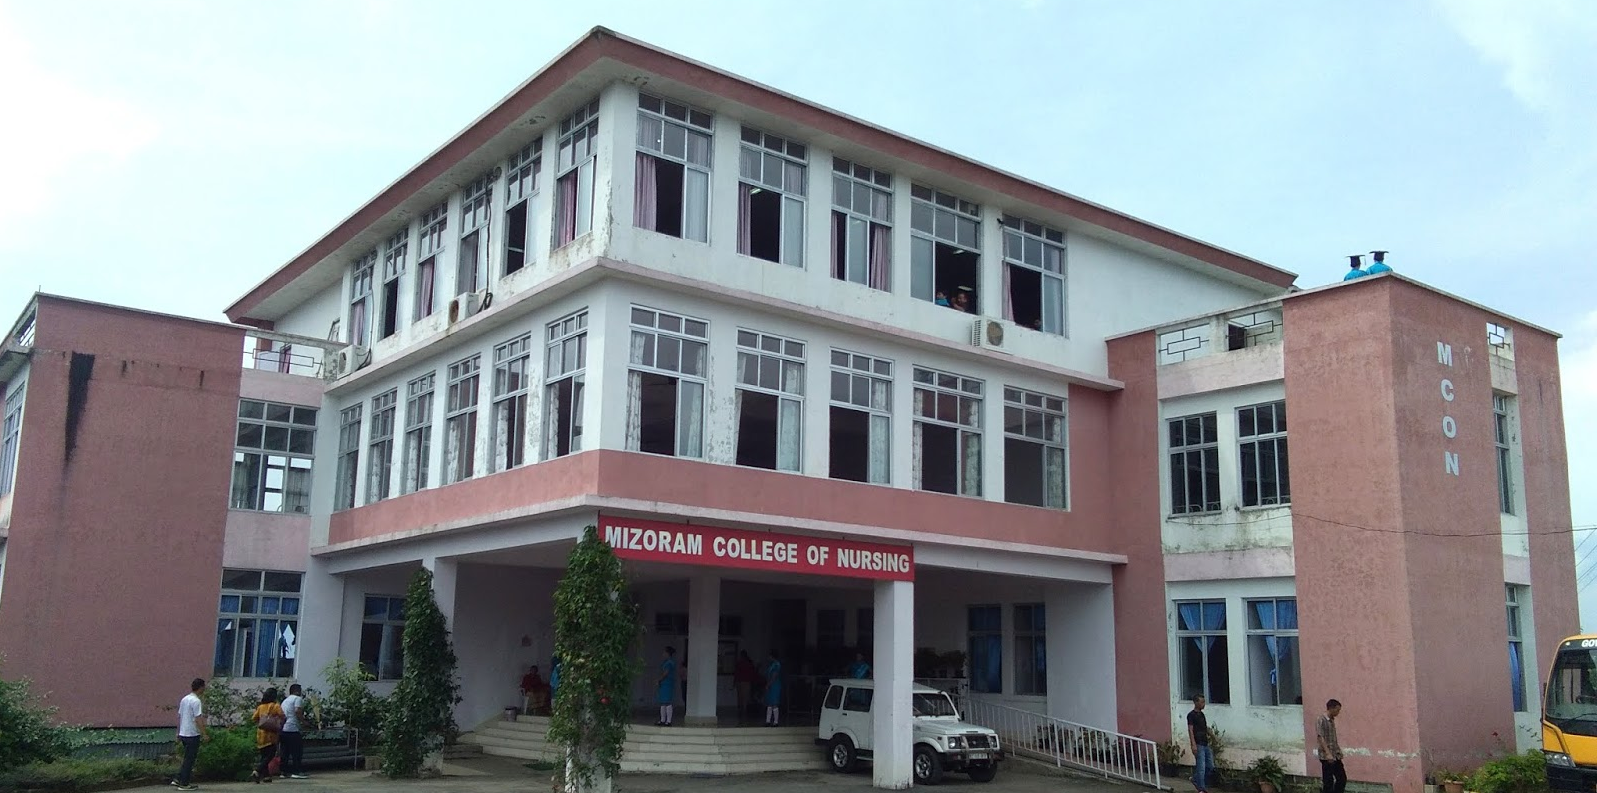 Mizoram College of Nursing, Aizawl Image